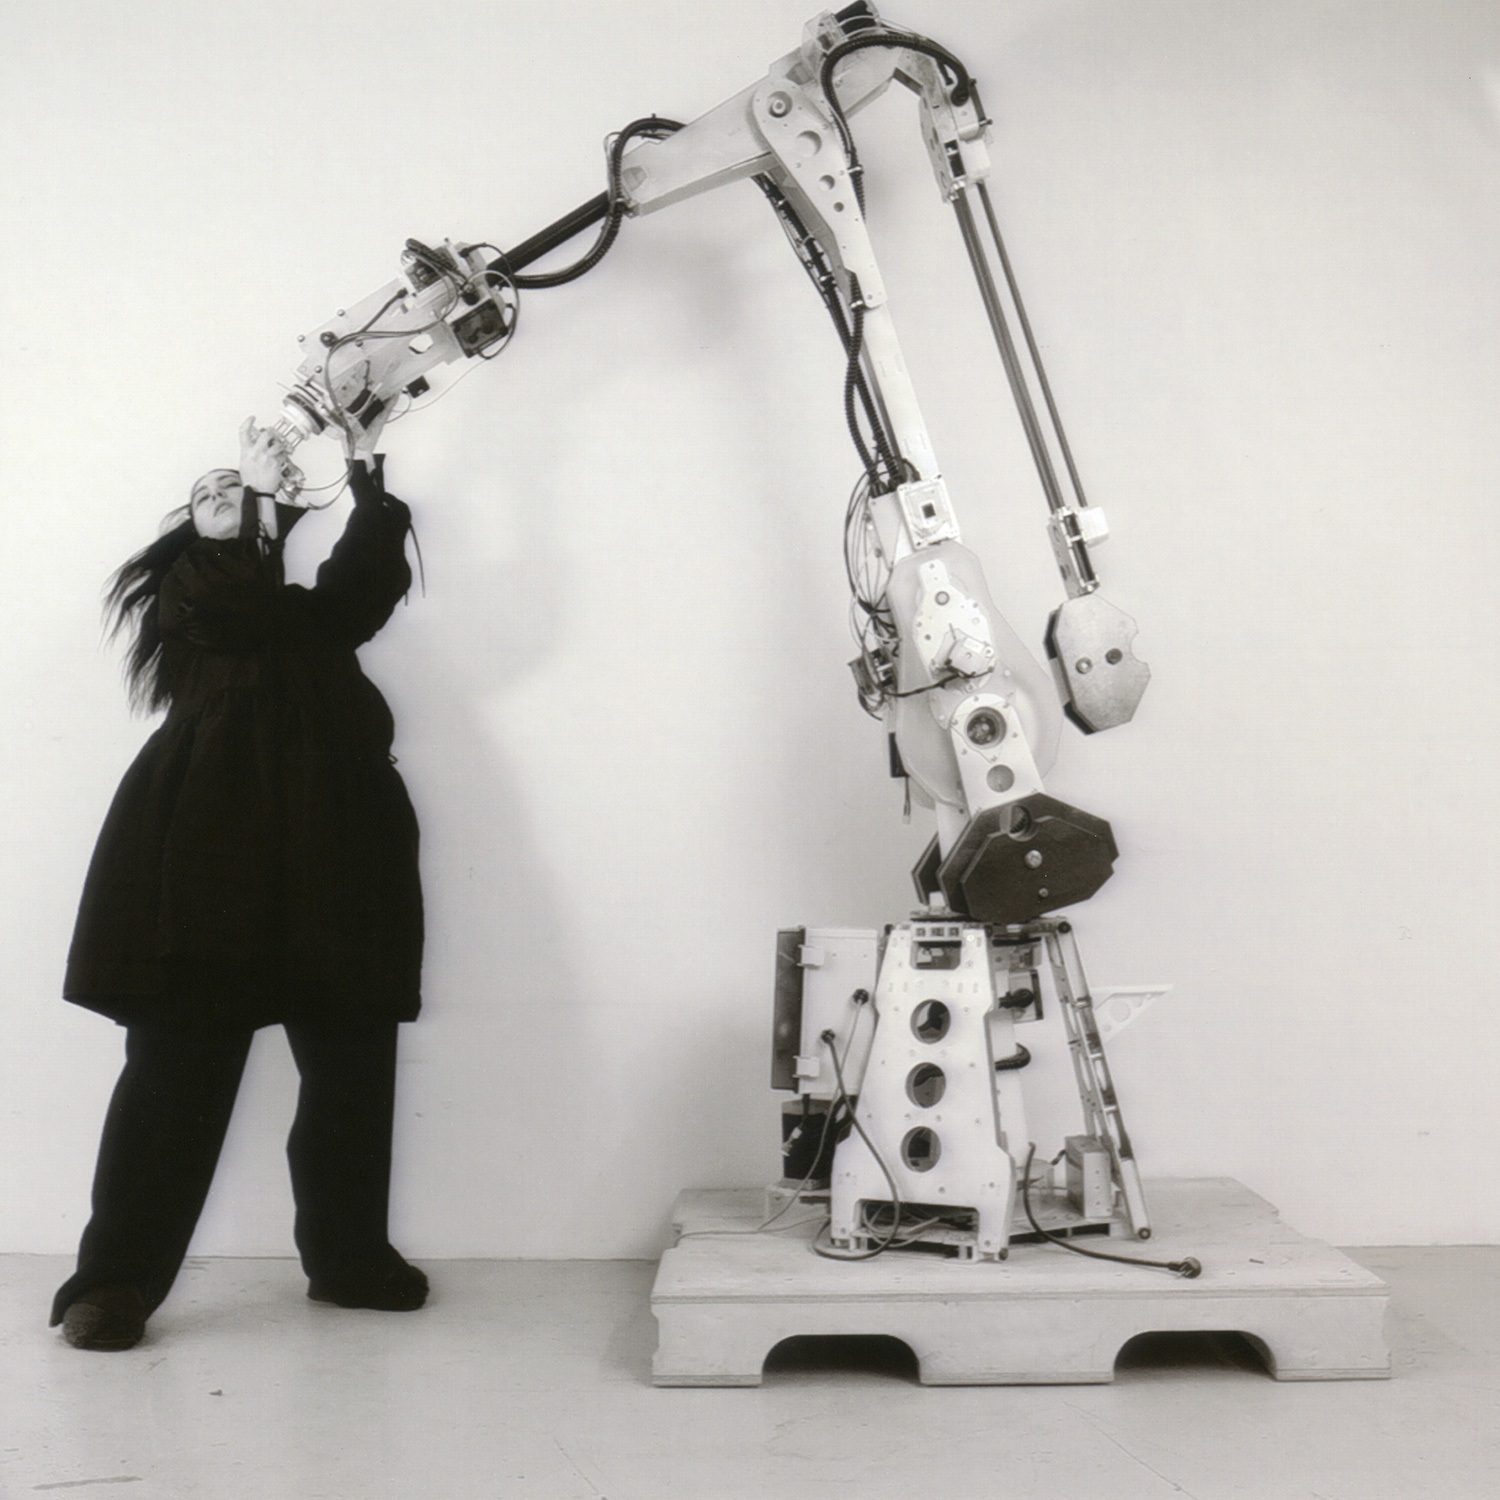 l'artiste kroy habillée en noir avec un robot